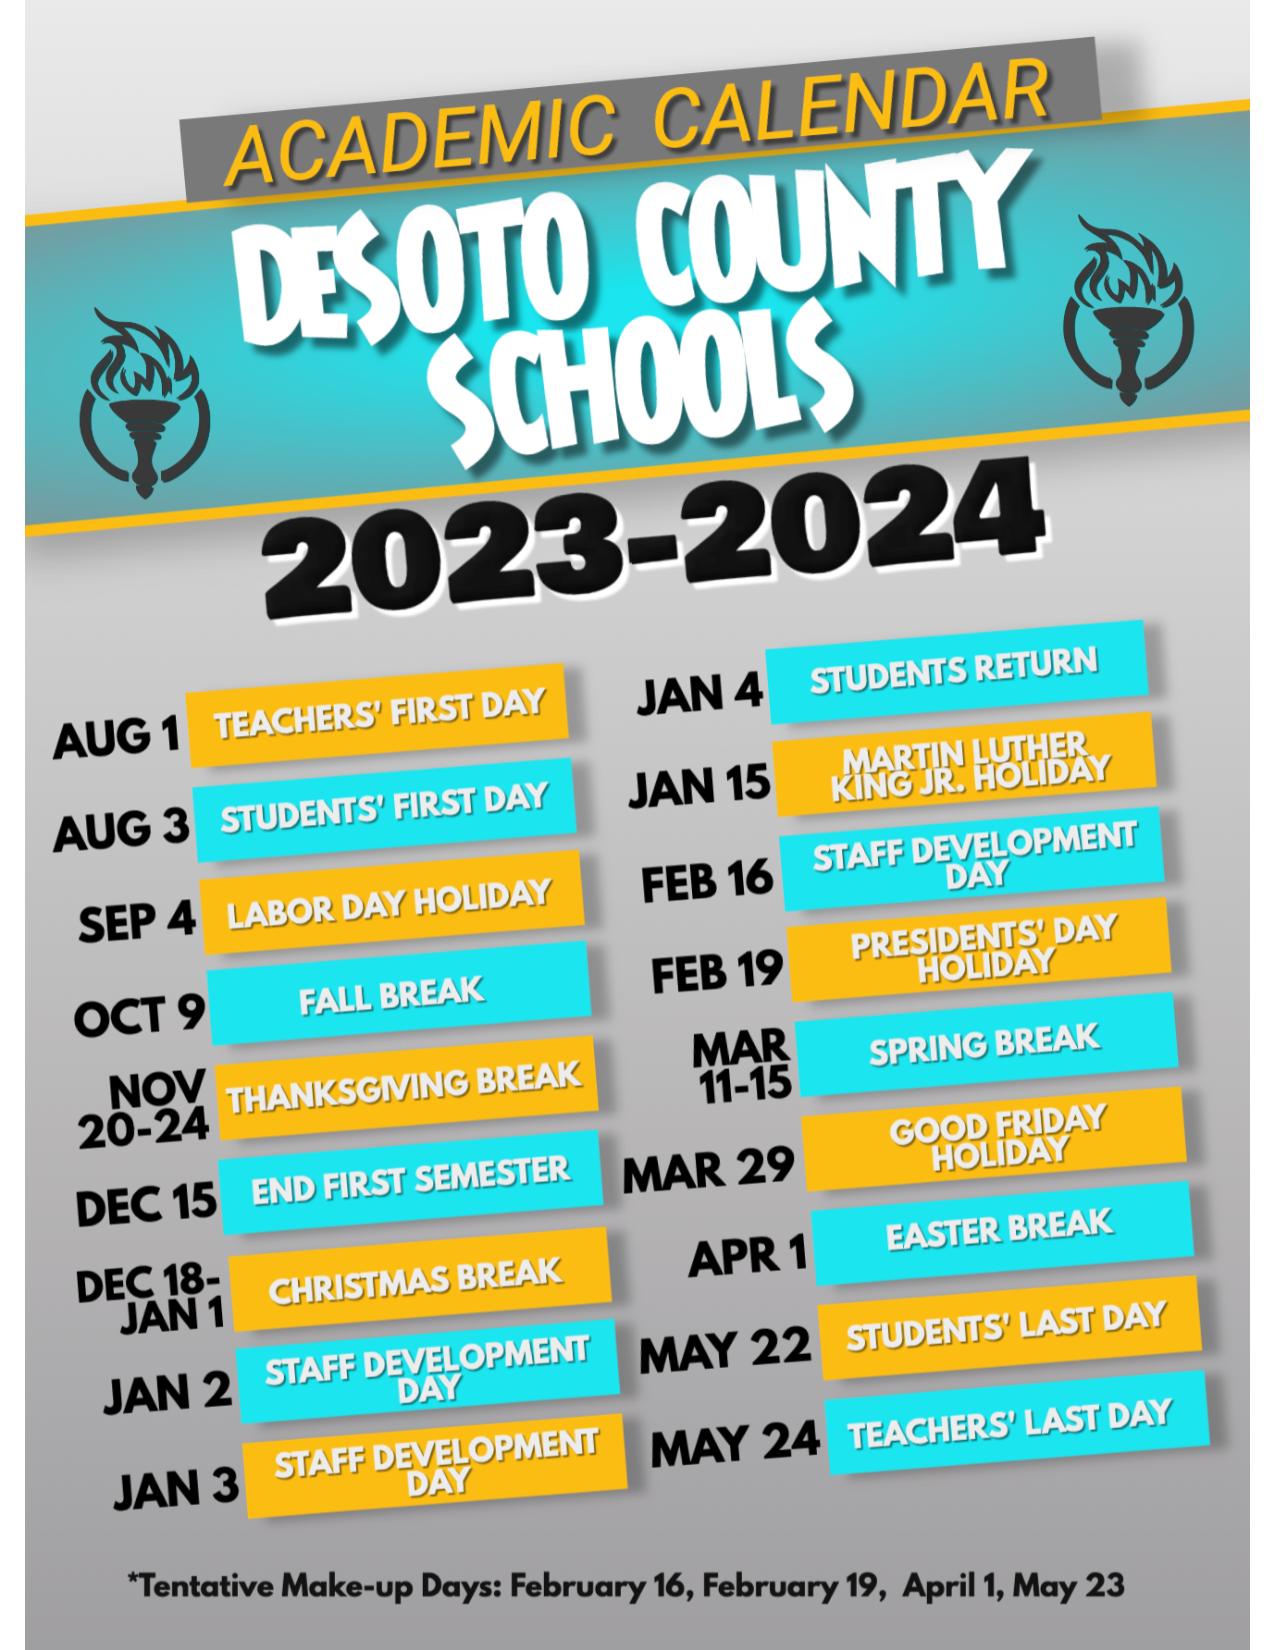 DeSoto County Schools Calendar 2023-2024 (Holiday Breaks)